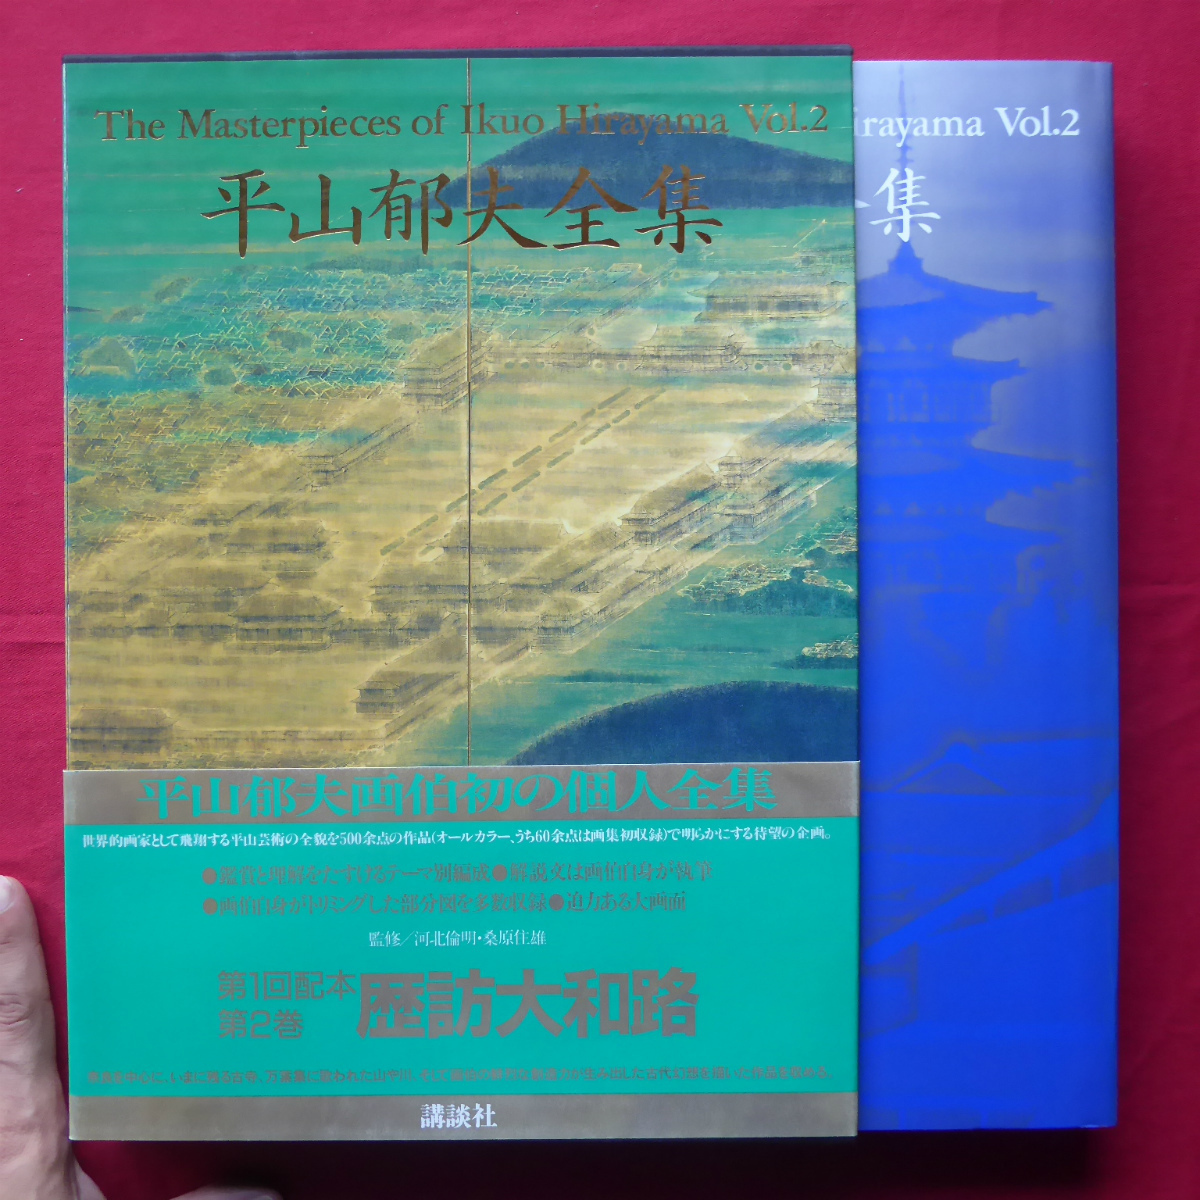 q1[ flat mountain . Hara complete set of works 2- history . Yamato ./1990 year *.. company ].: Inoue Yasushi @5